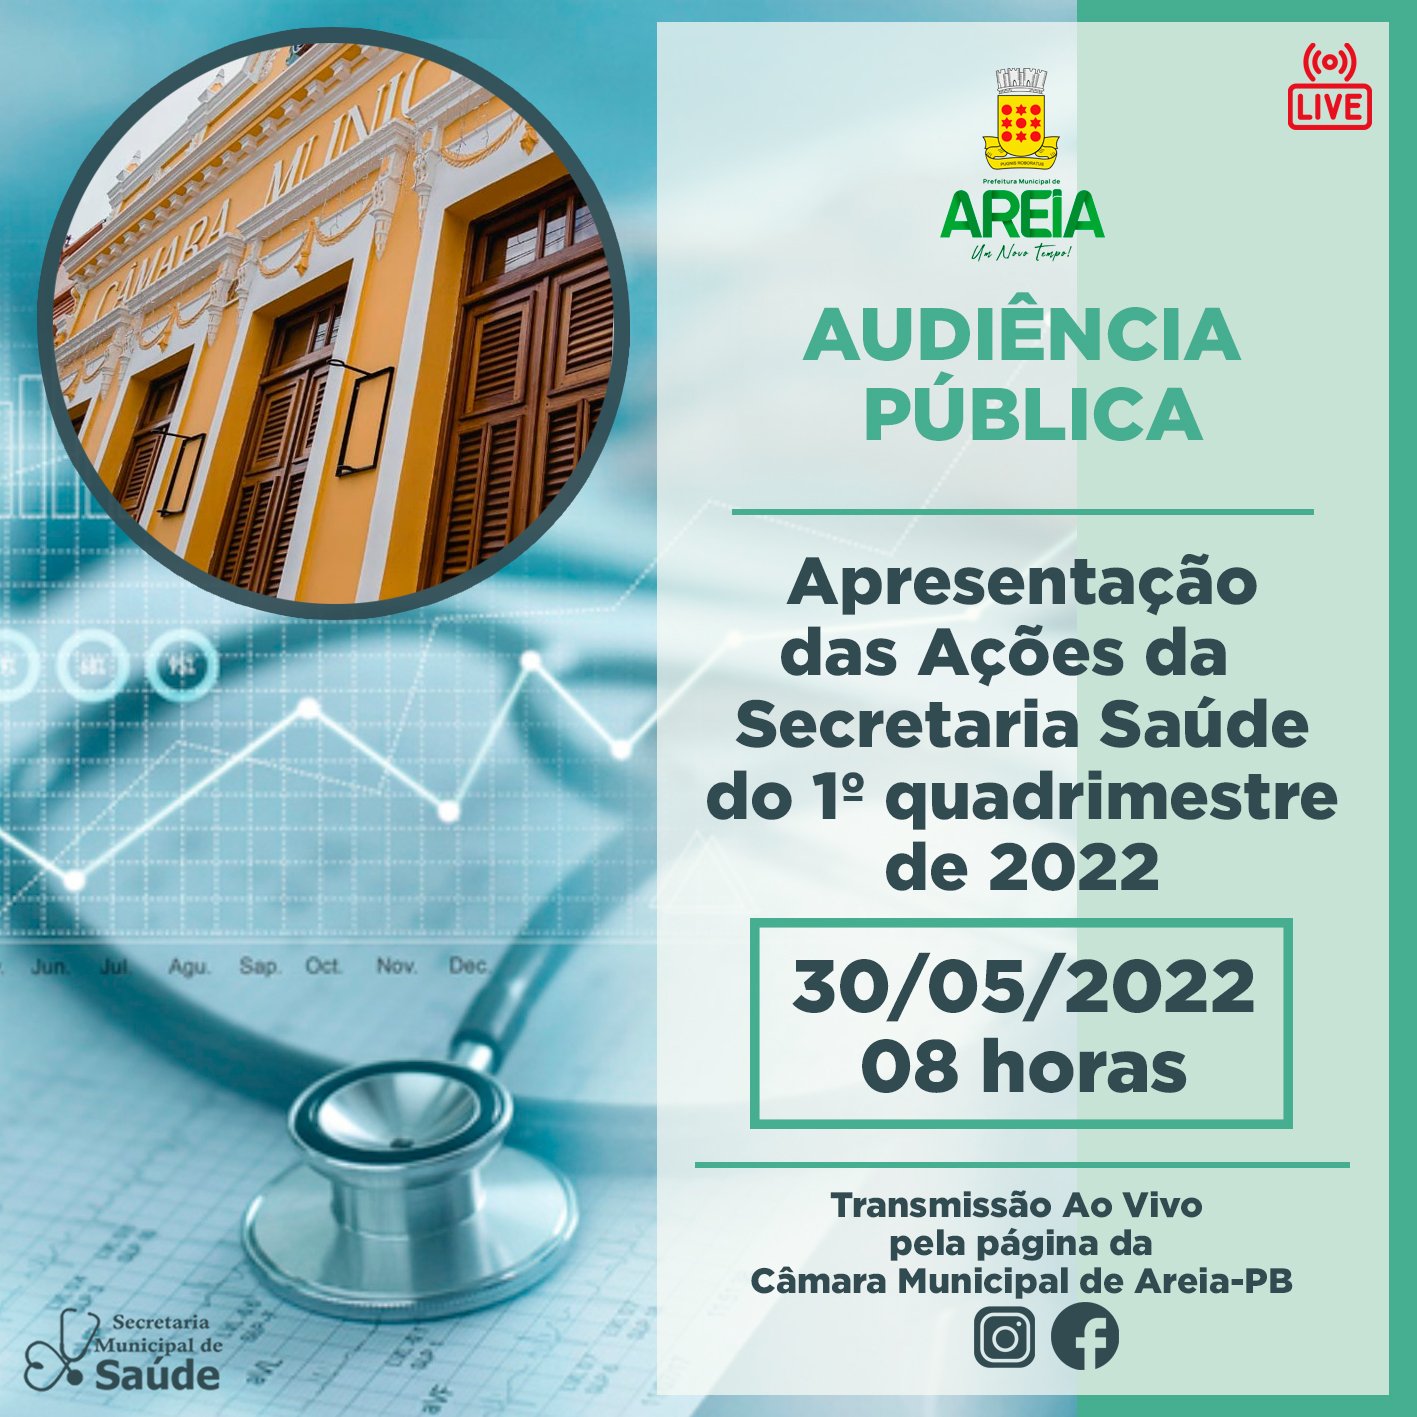 Secretaria de Saúde de Areia realiza prestação de contas das ações desenvolvidas  no 1º quadrimestre de 2022